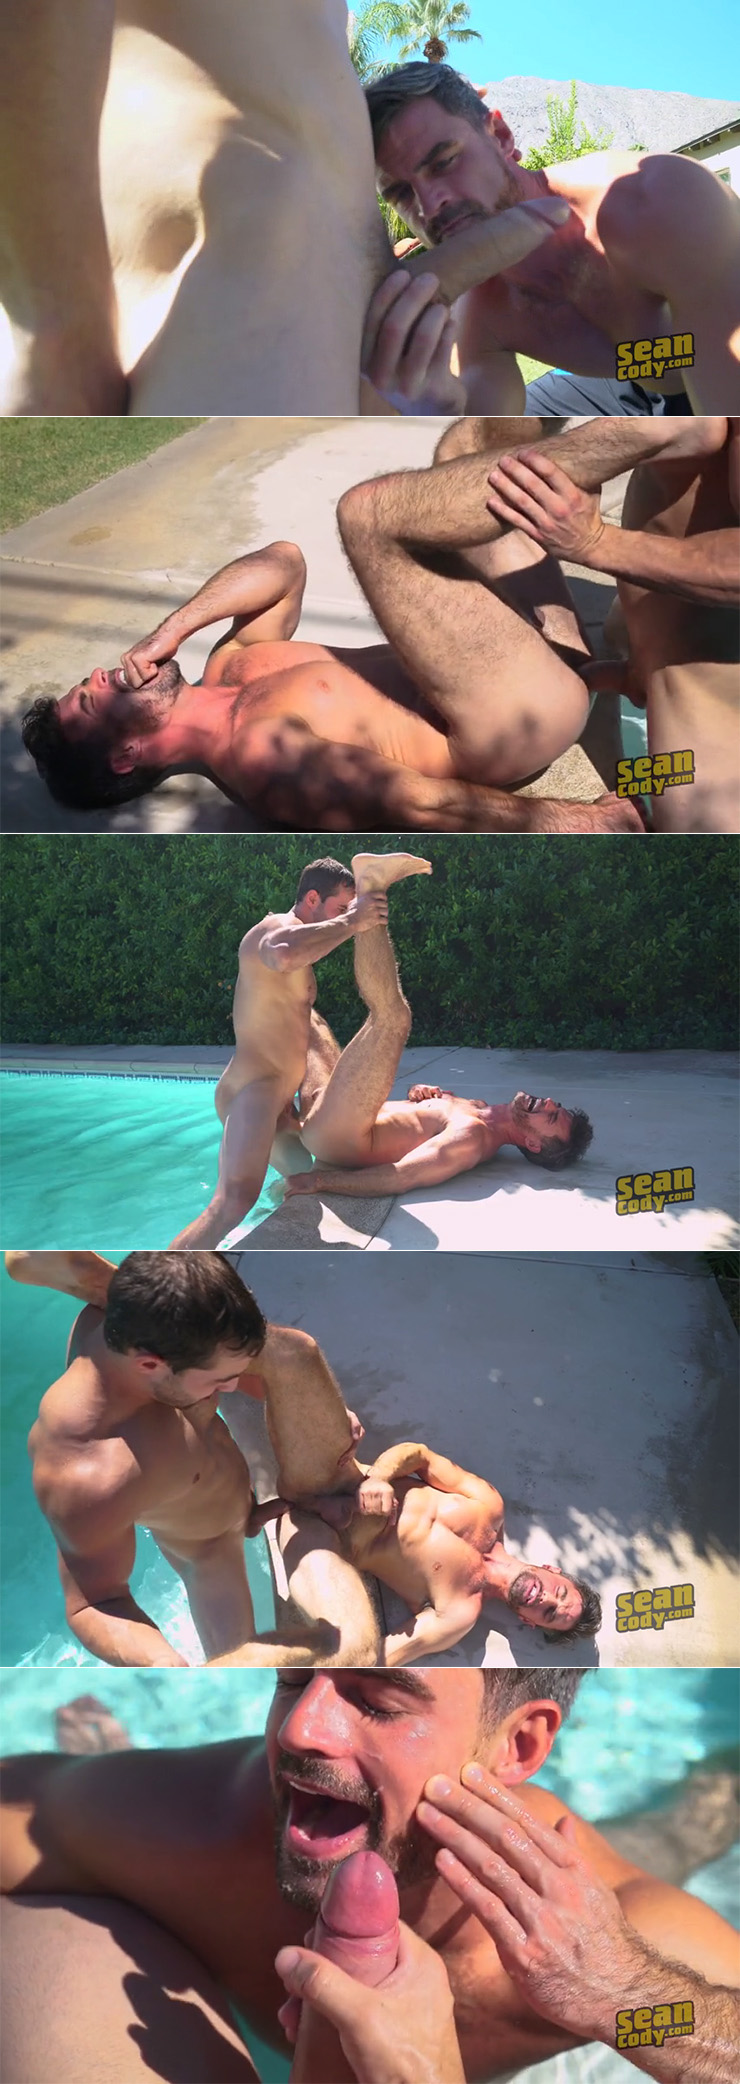 Sean Cody Randy raw-fucks Daniel Gay Bareback Porn Hairy Guy Male Feet Soles Big Uncut Cock Stretched Hairy Anus stills